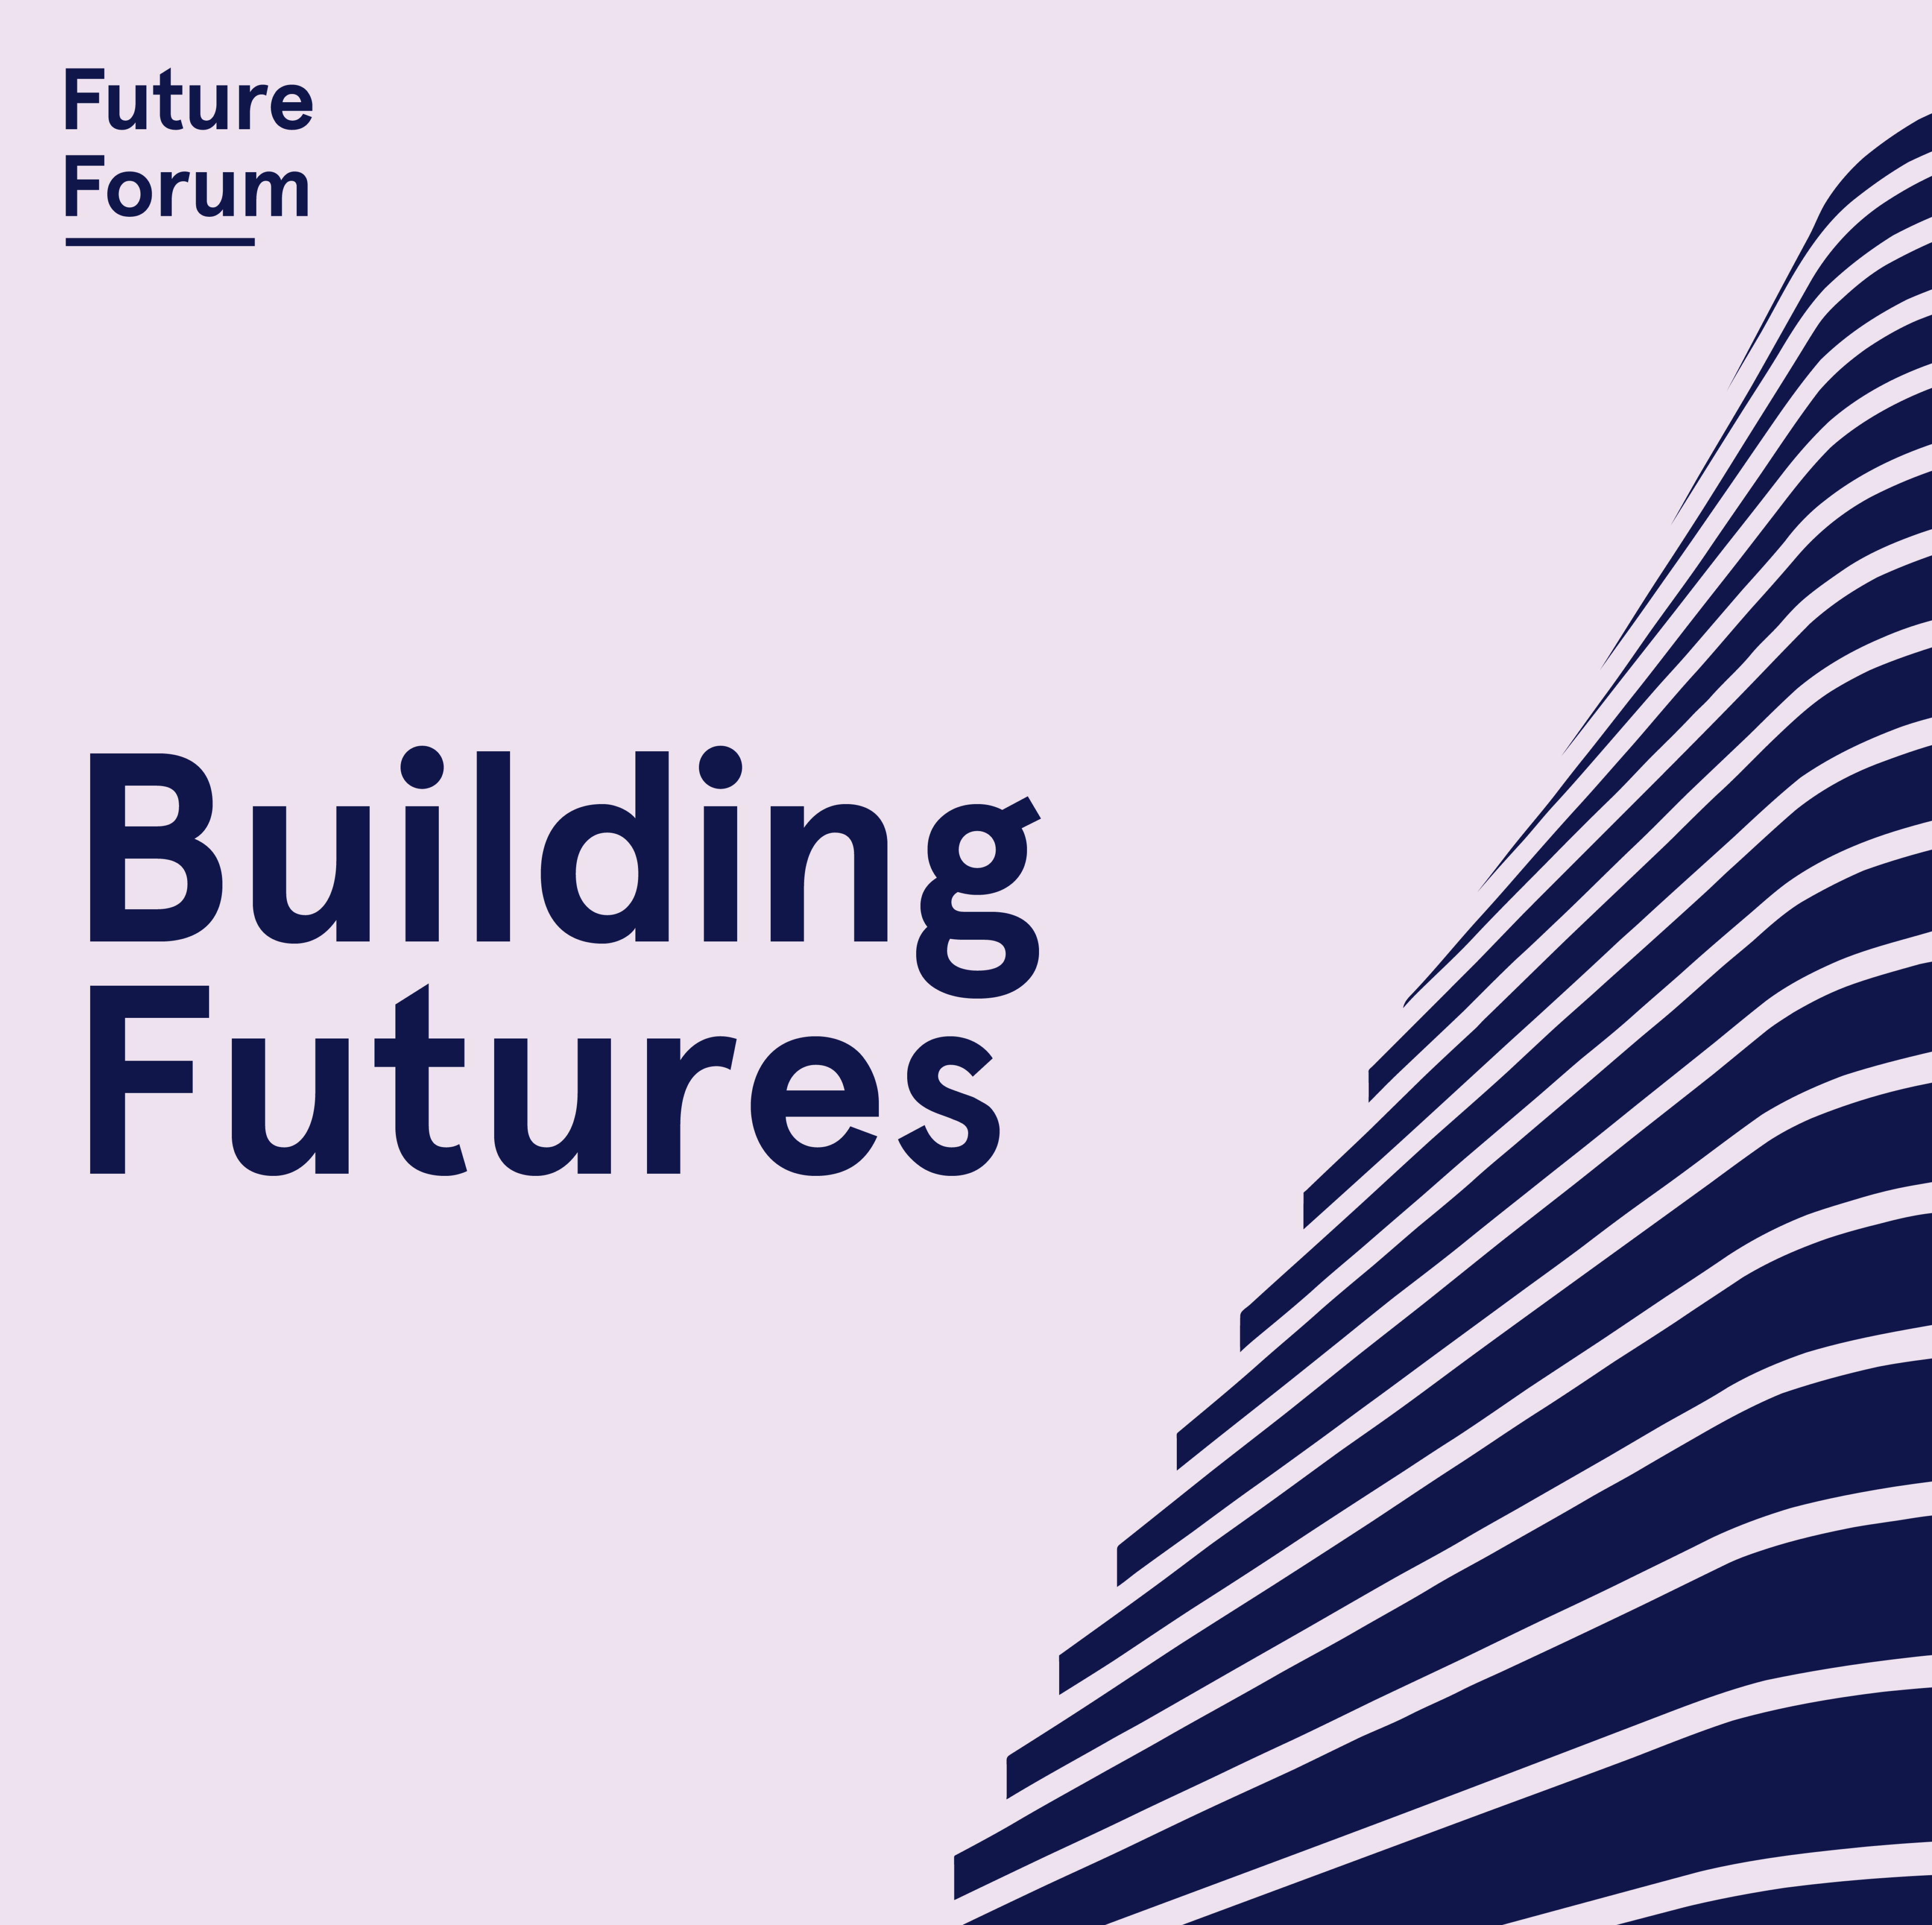 Future Forum Building Futures Adelaide